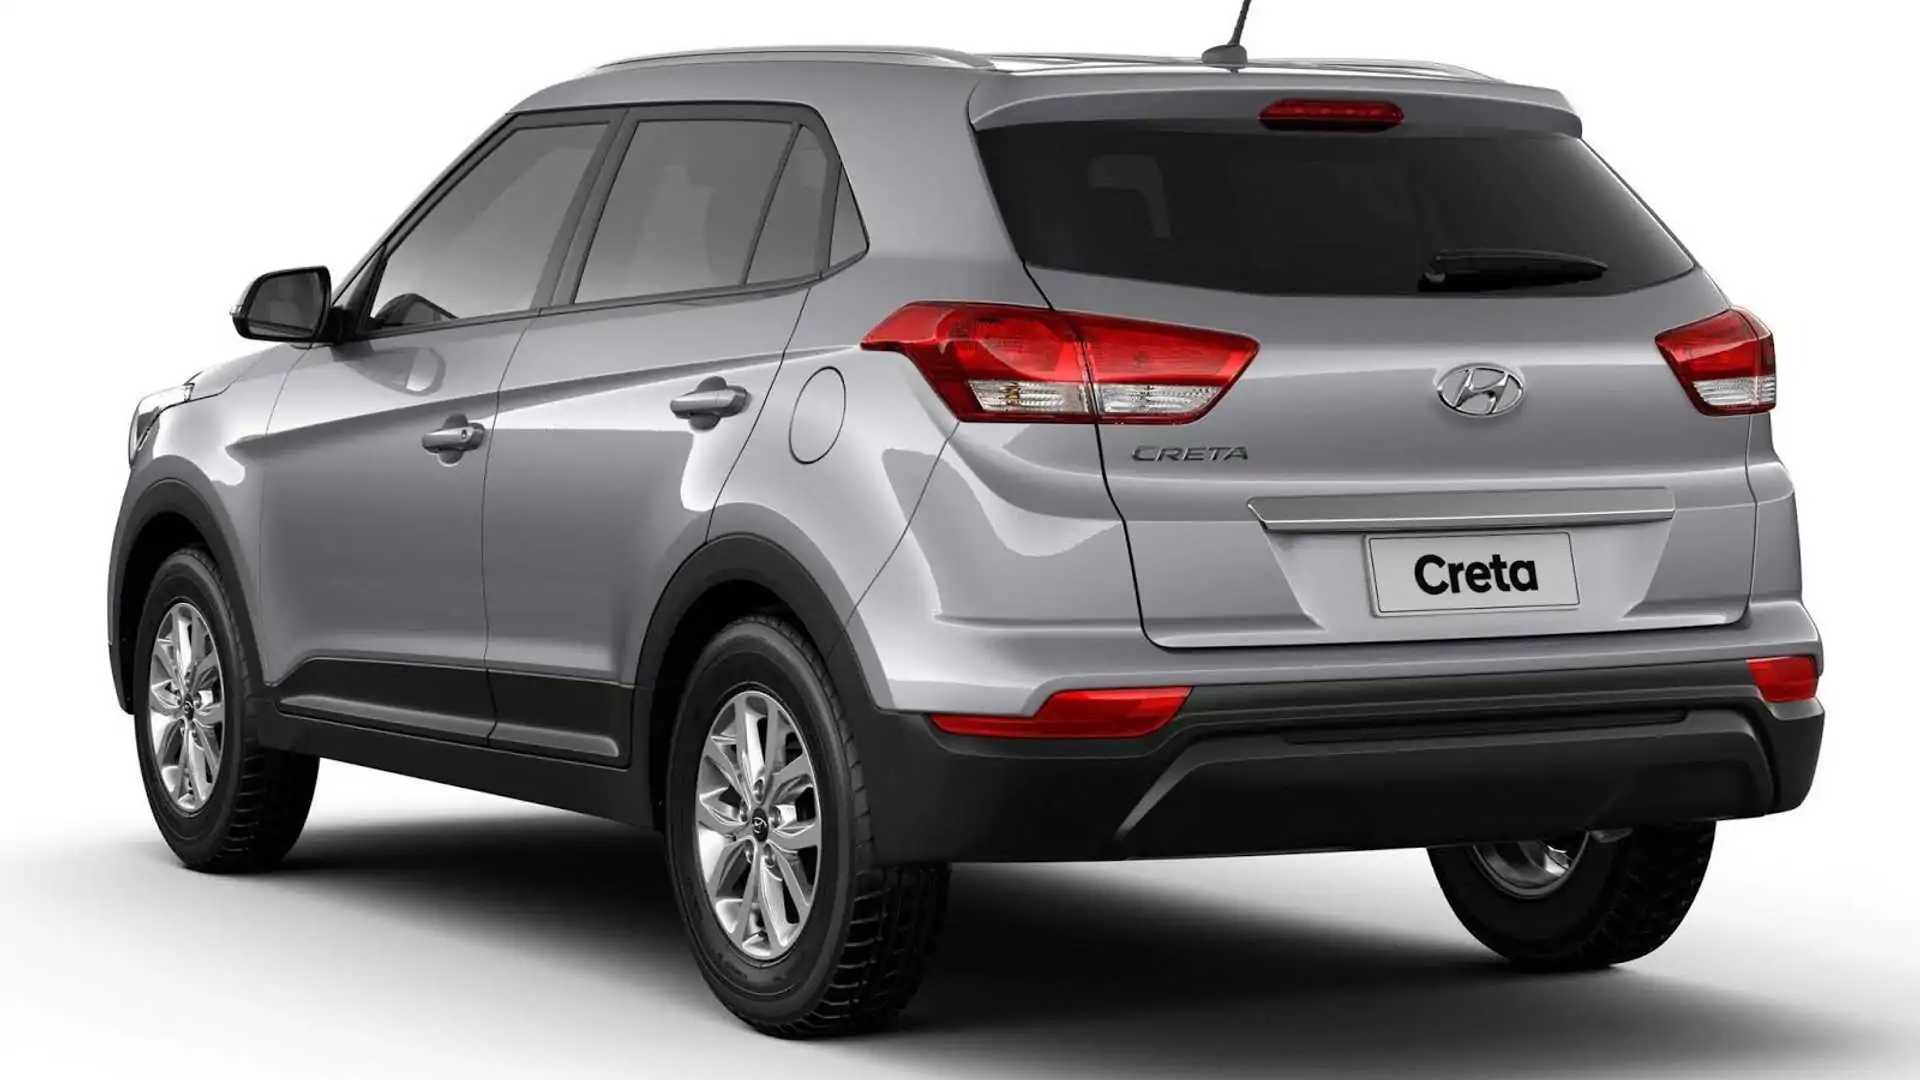 Quanto custa um Hyundai Creta